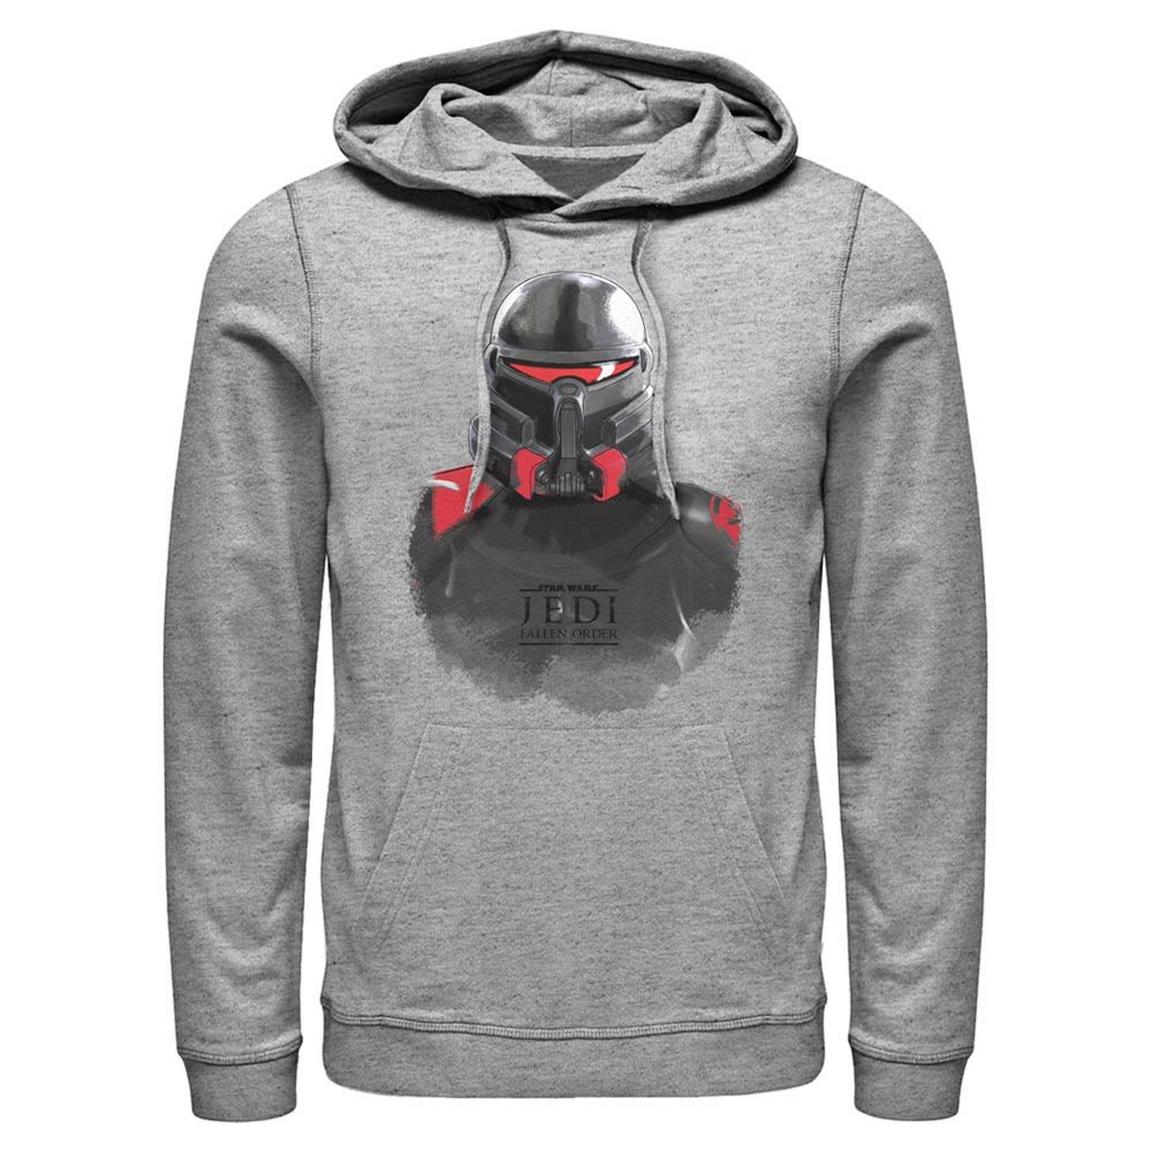 Star Wars Jedi: Fallen Order Purge Trooper Helmet Hooded Sweatshirt, Size: XL, Fifth Sun